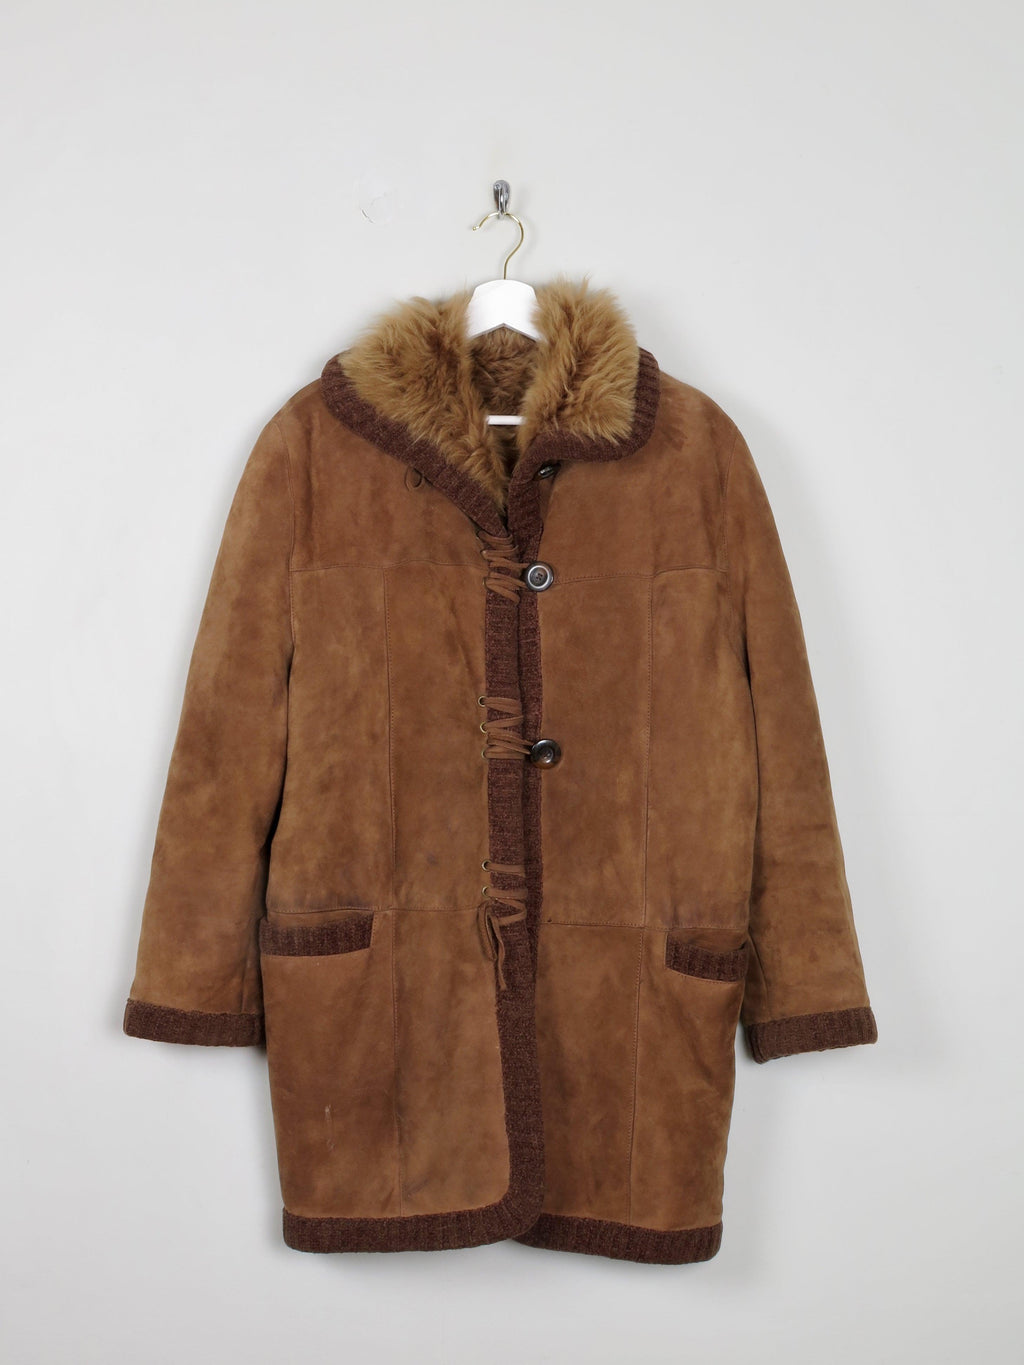 Women's Tan Sherling Sheepskin Short Coat S/M